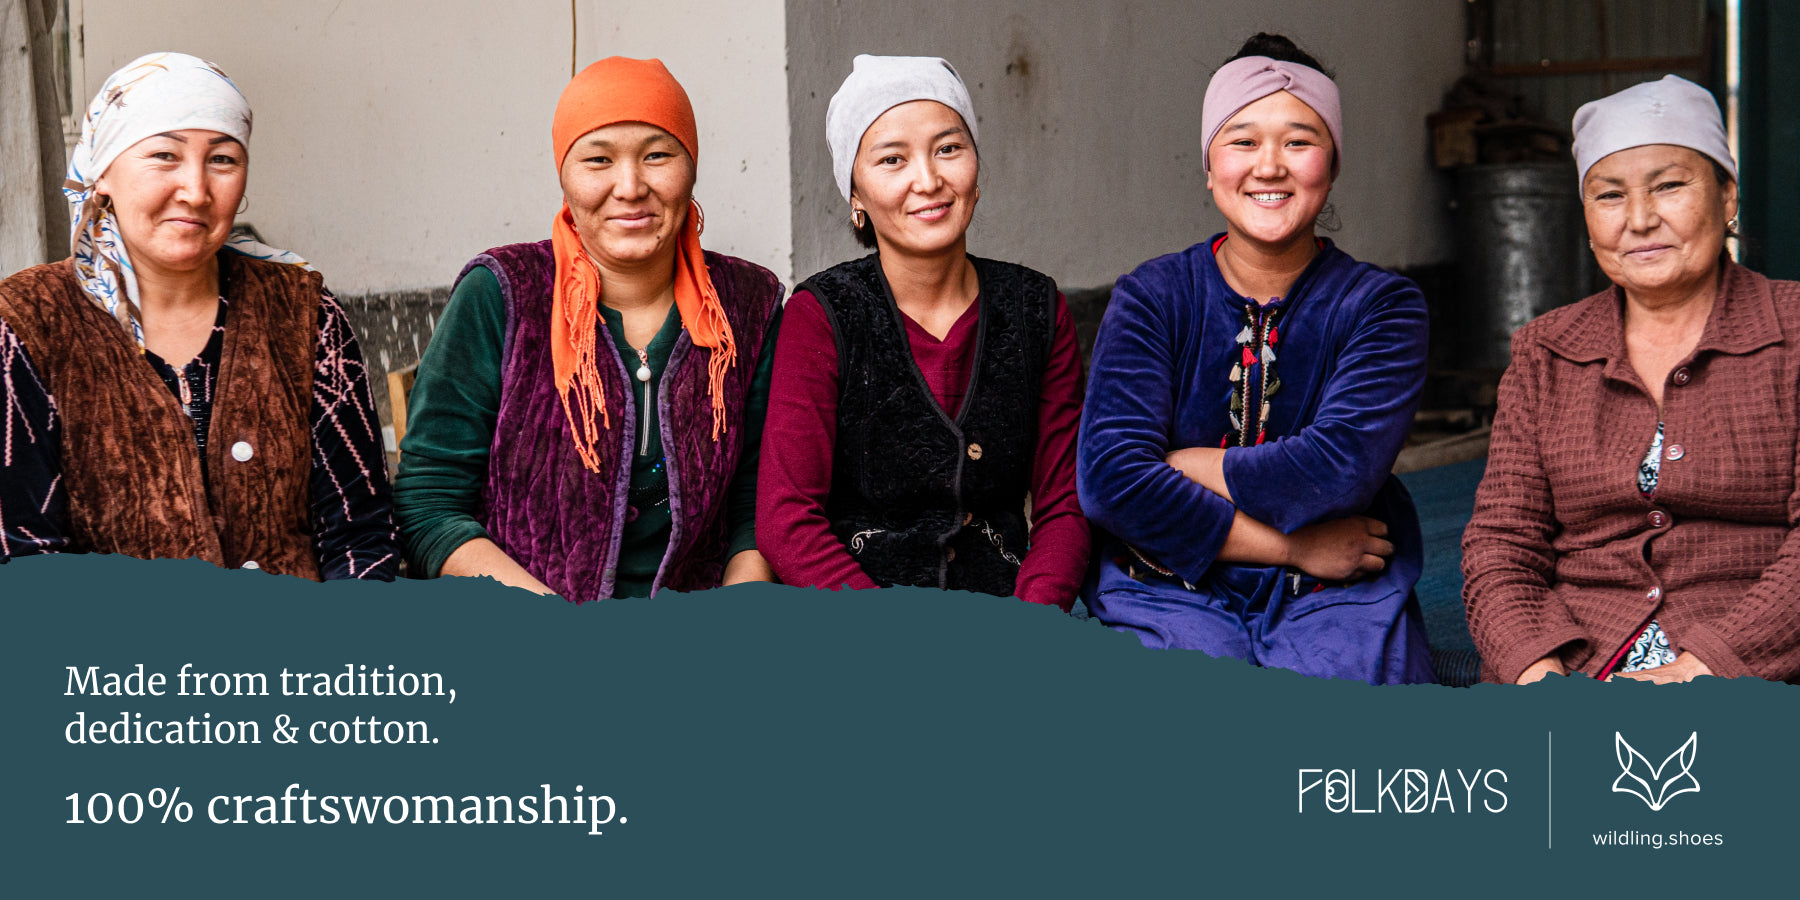 Fünf Frauen aus Kirgistan in farbenfroher praktischer Kleidung sind nebeneinander fotografiert.